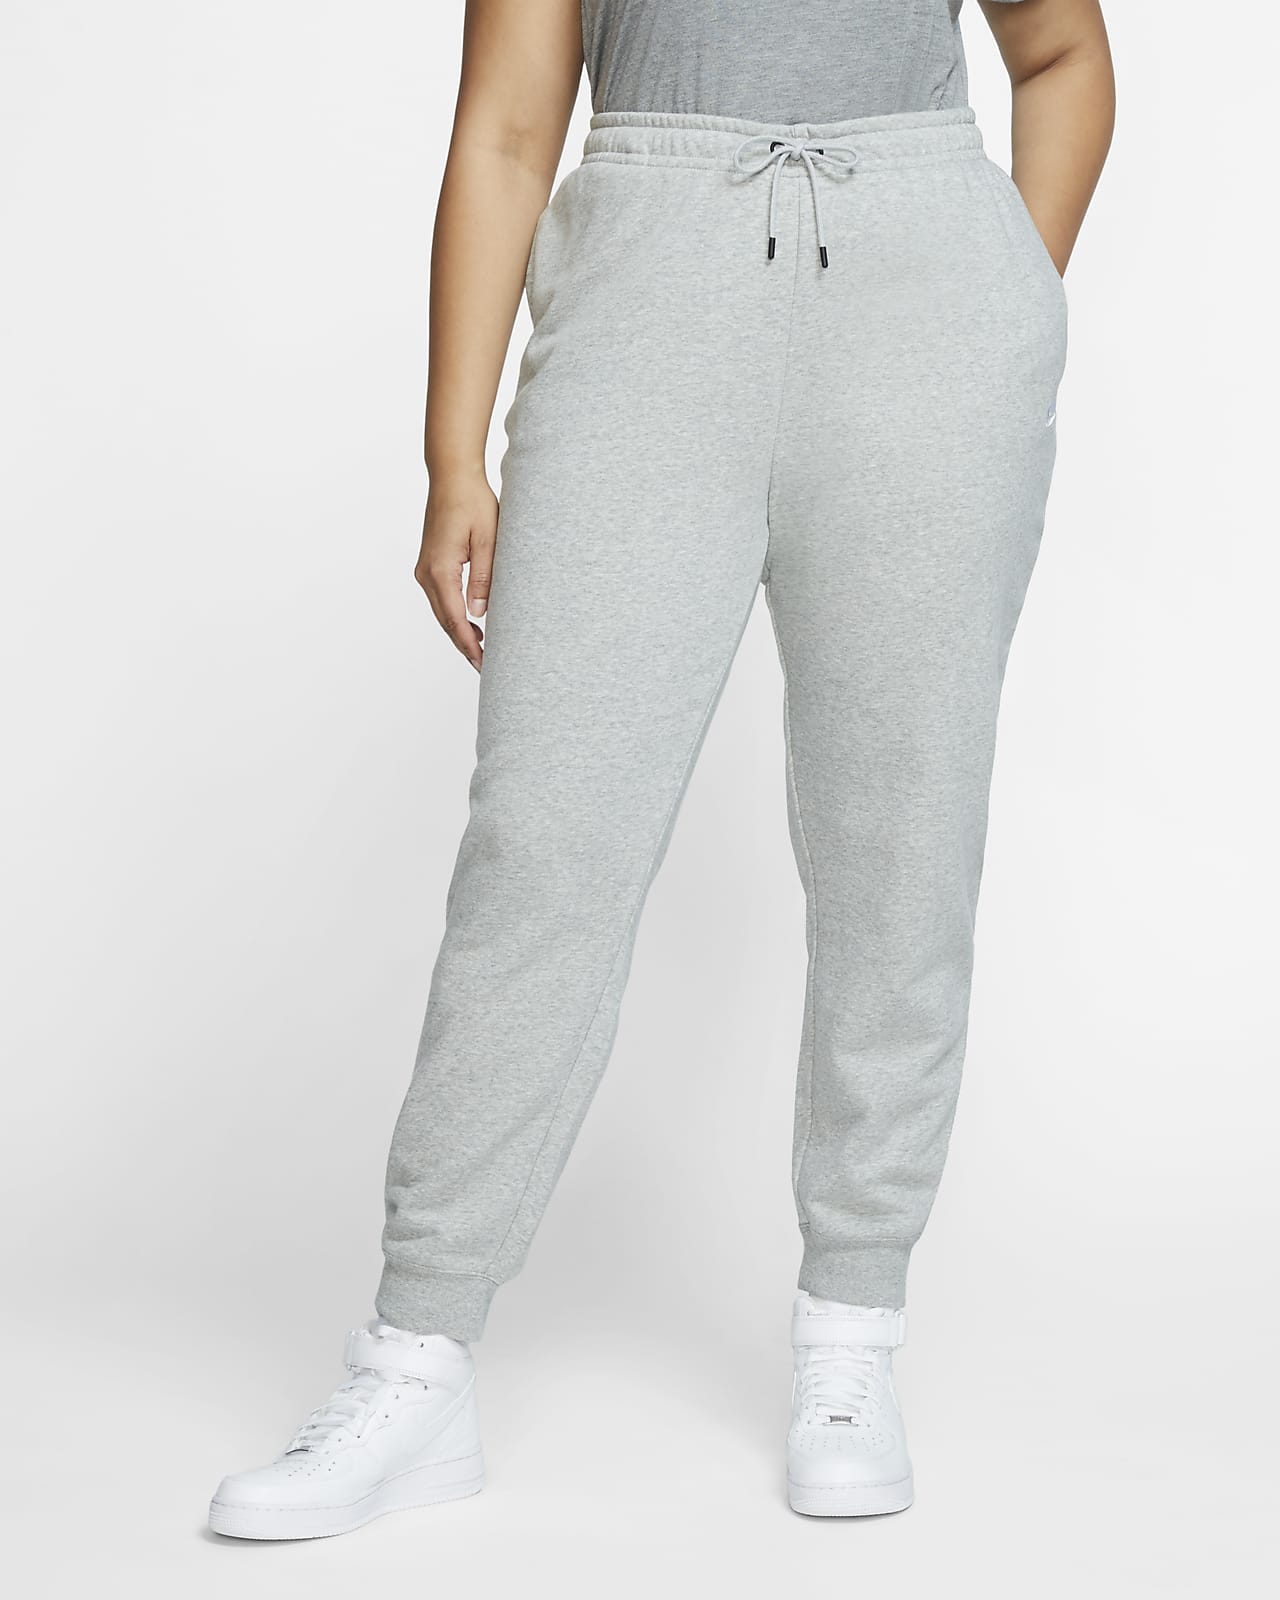 Pantalon en Fleece Nike Sportswear Essential pour Femme (grande taille)